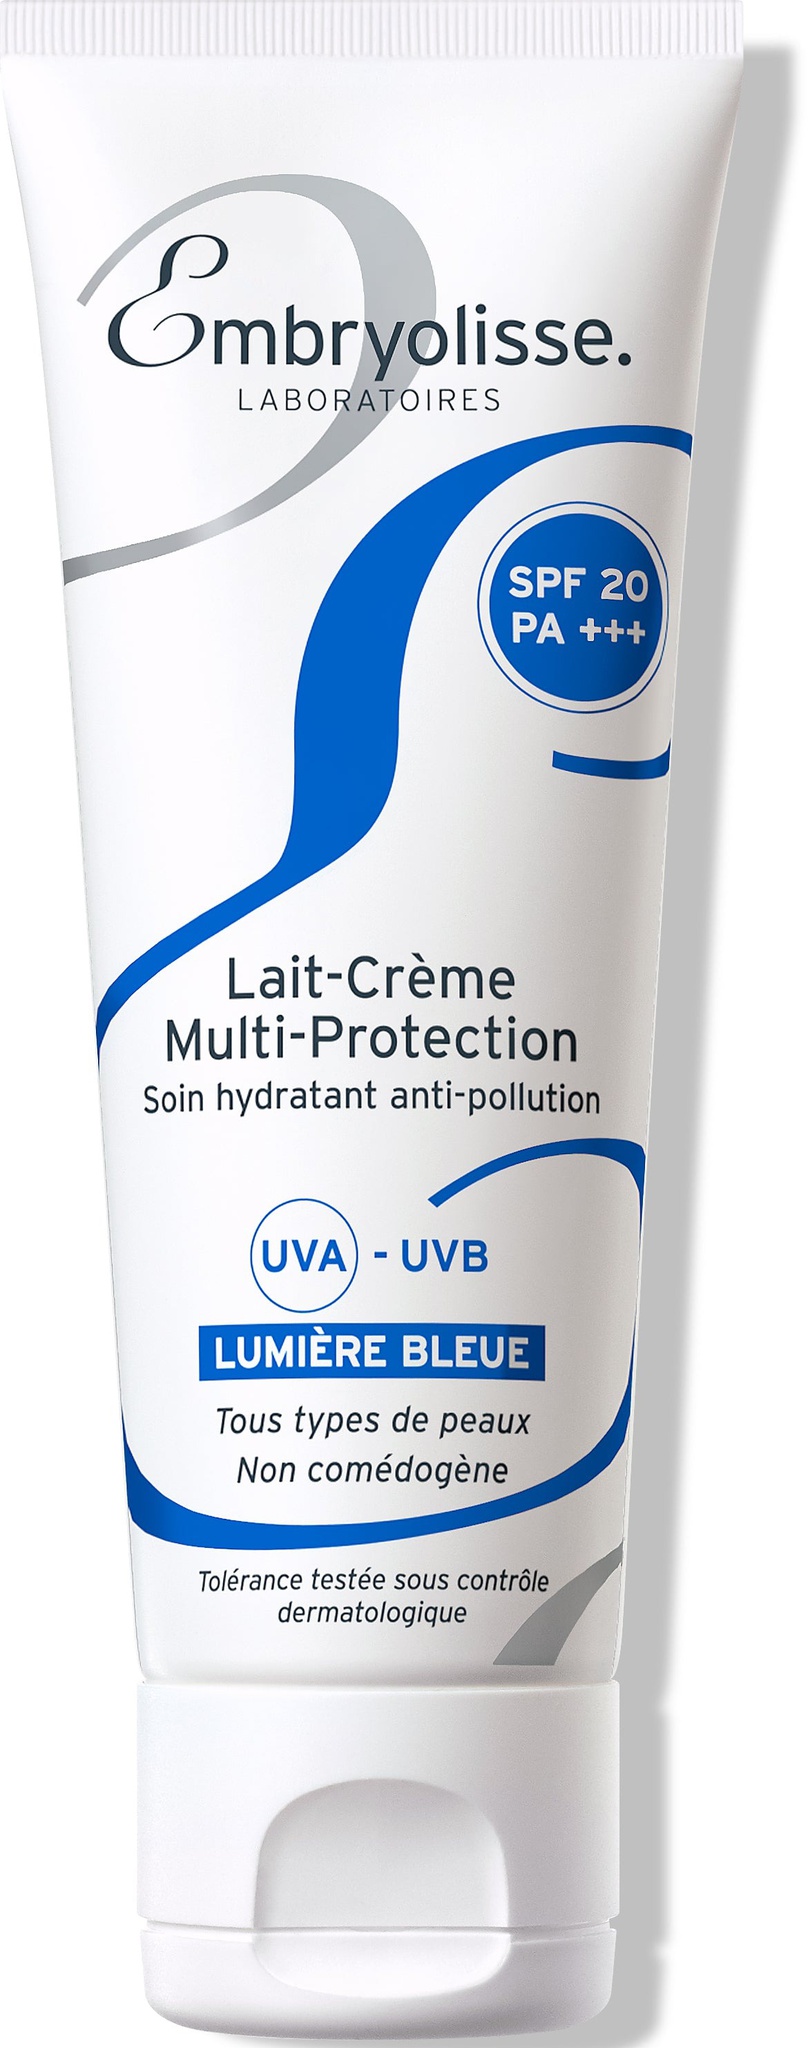 Embryolisse Lait-crème Multi-protection